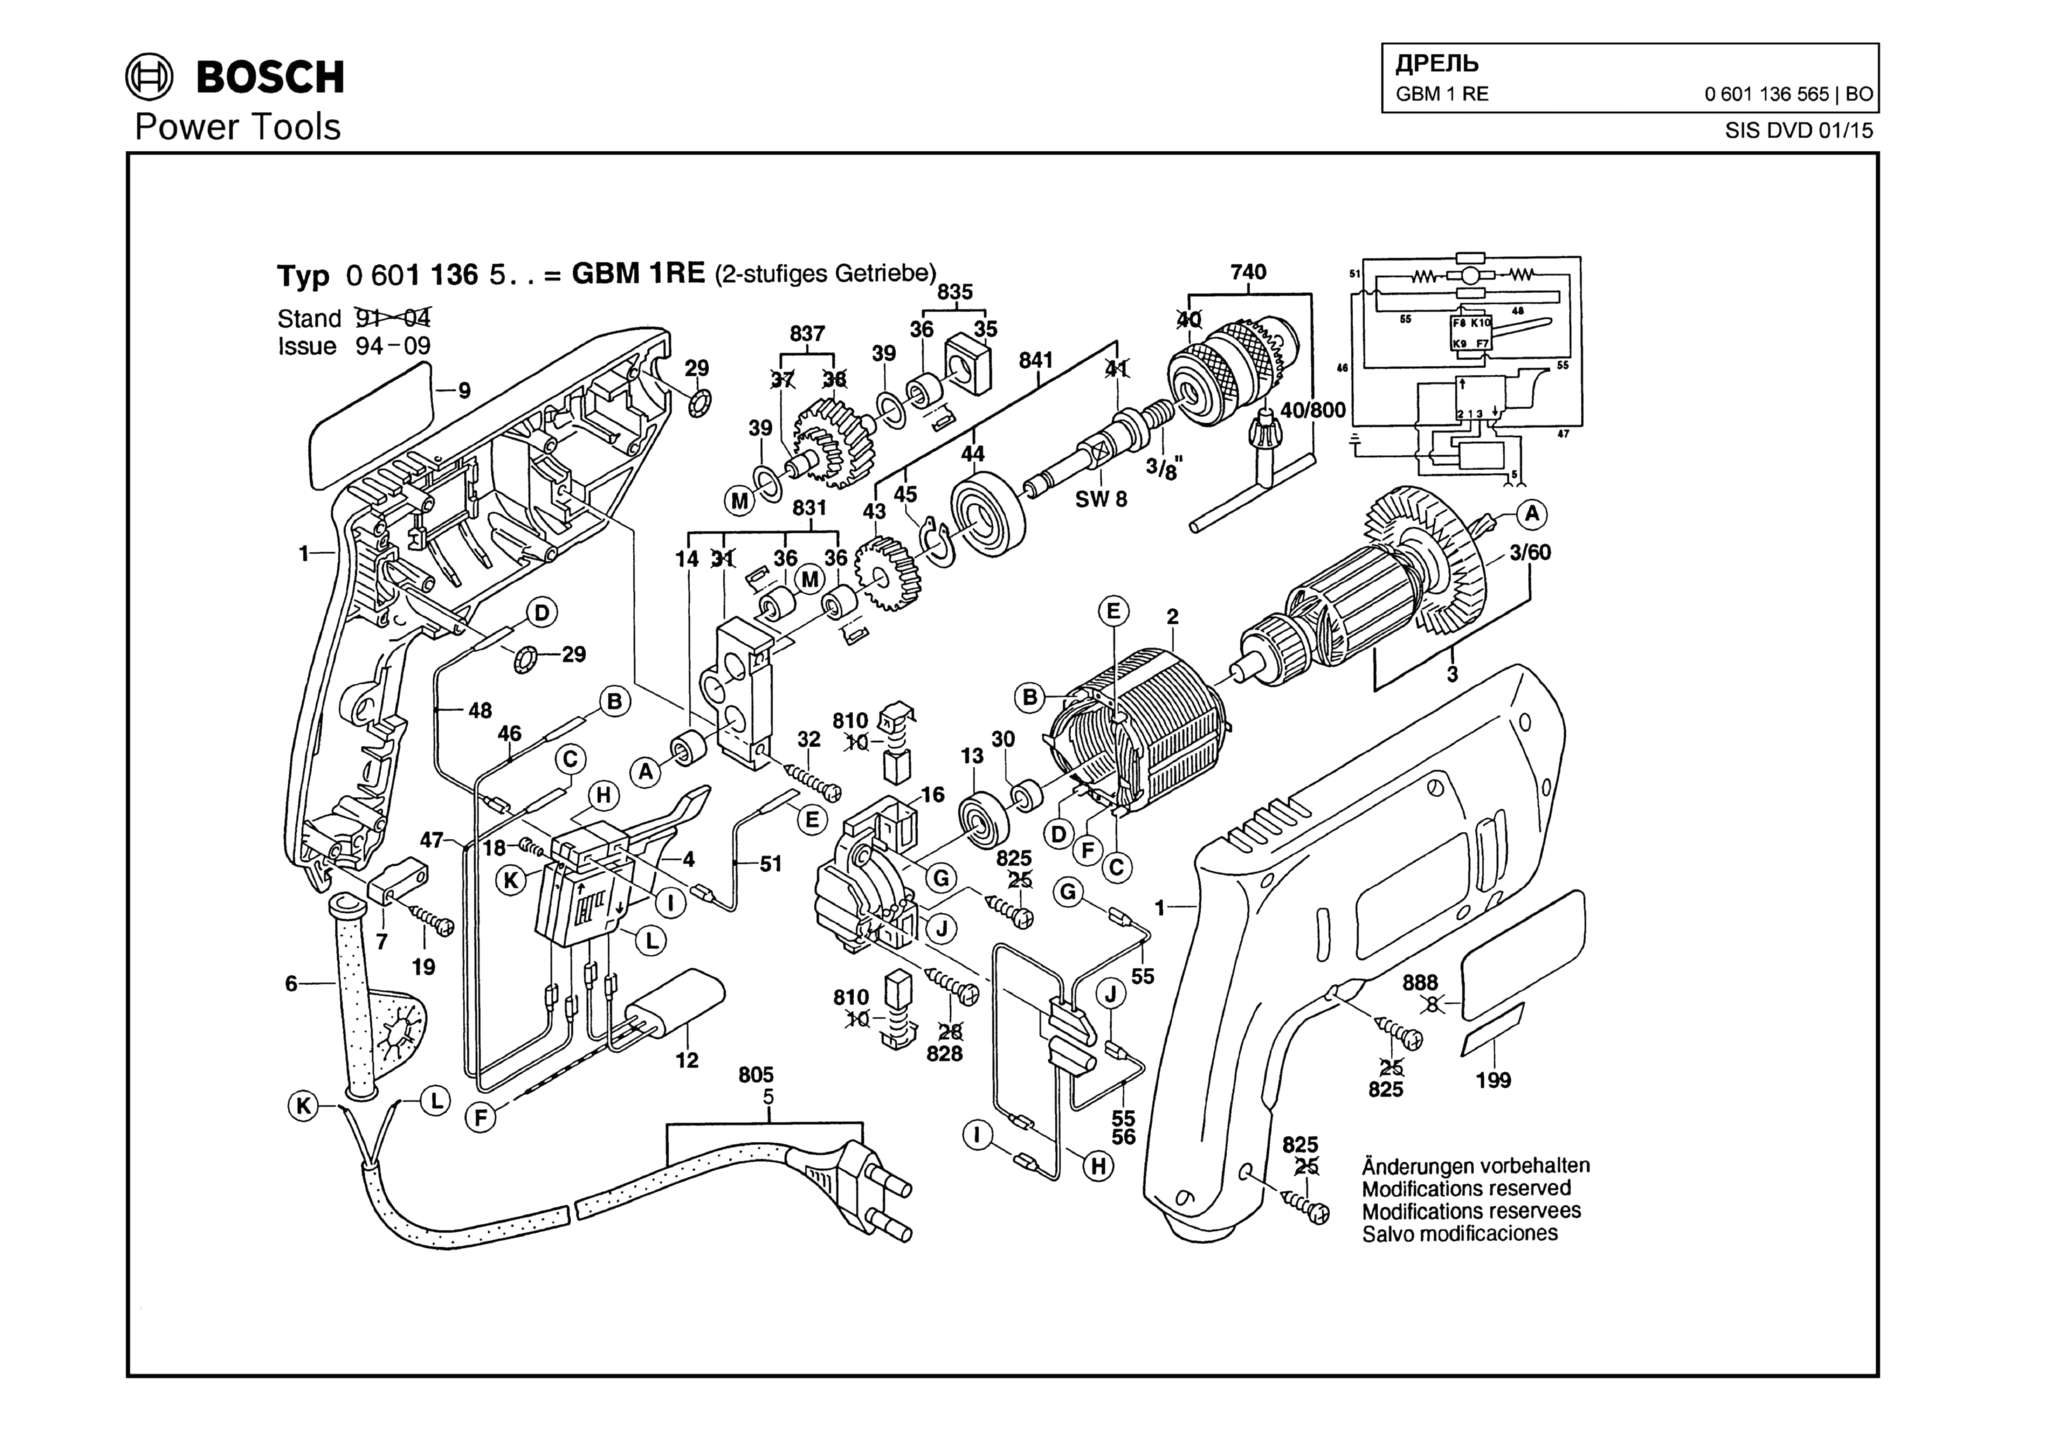 Запчасти, схема и деталировка Bosch GBM 1 RE (ТИП 0601136565)